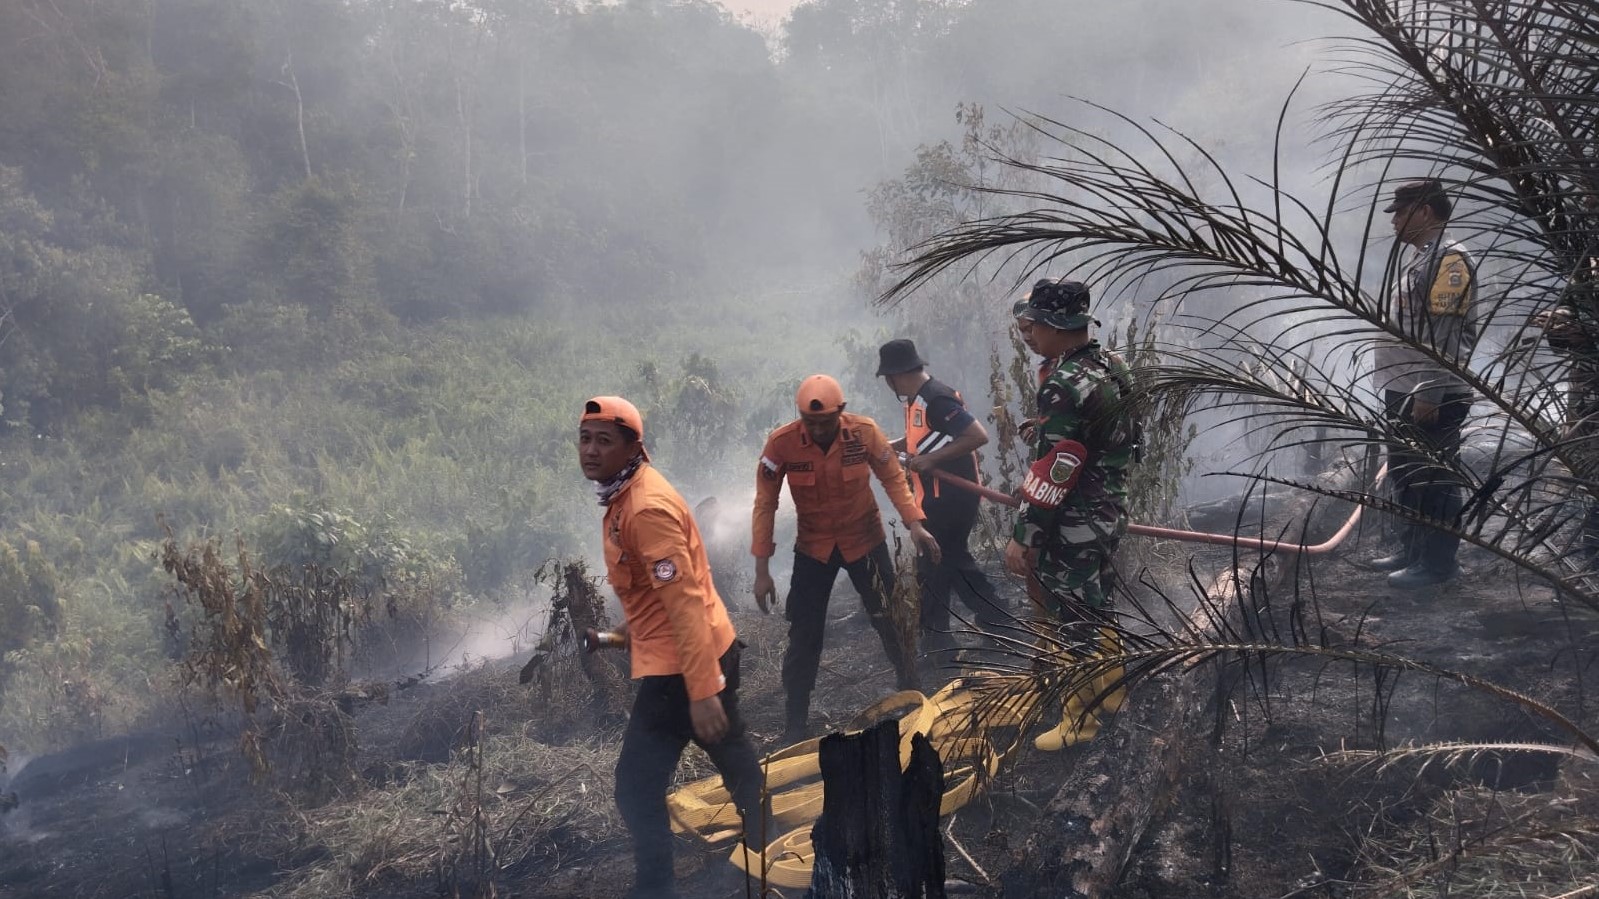 Data BPBD, Sudah 15 Hektar Lahan di Musi Rawas yang Terbakar, Polres Musi Rawas Tambah Personil Brimob